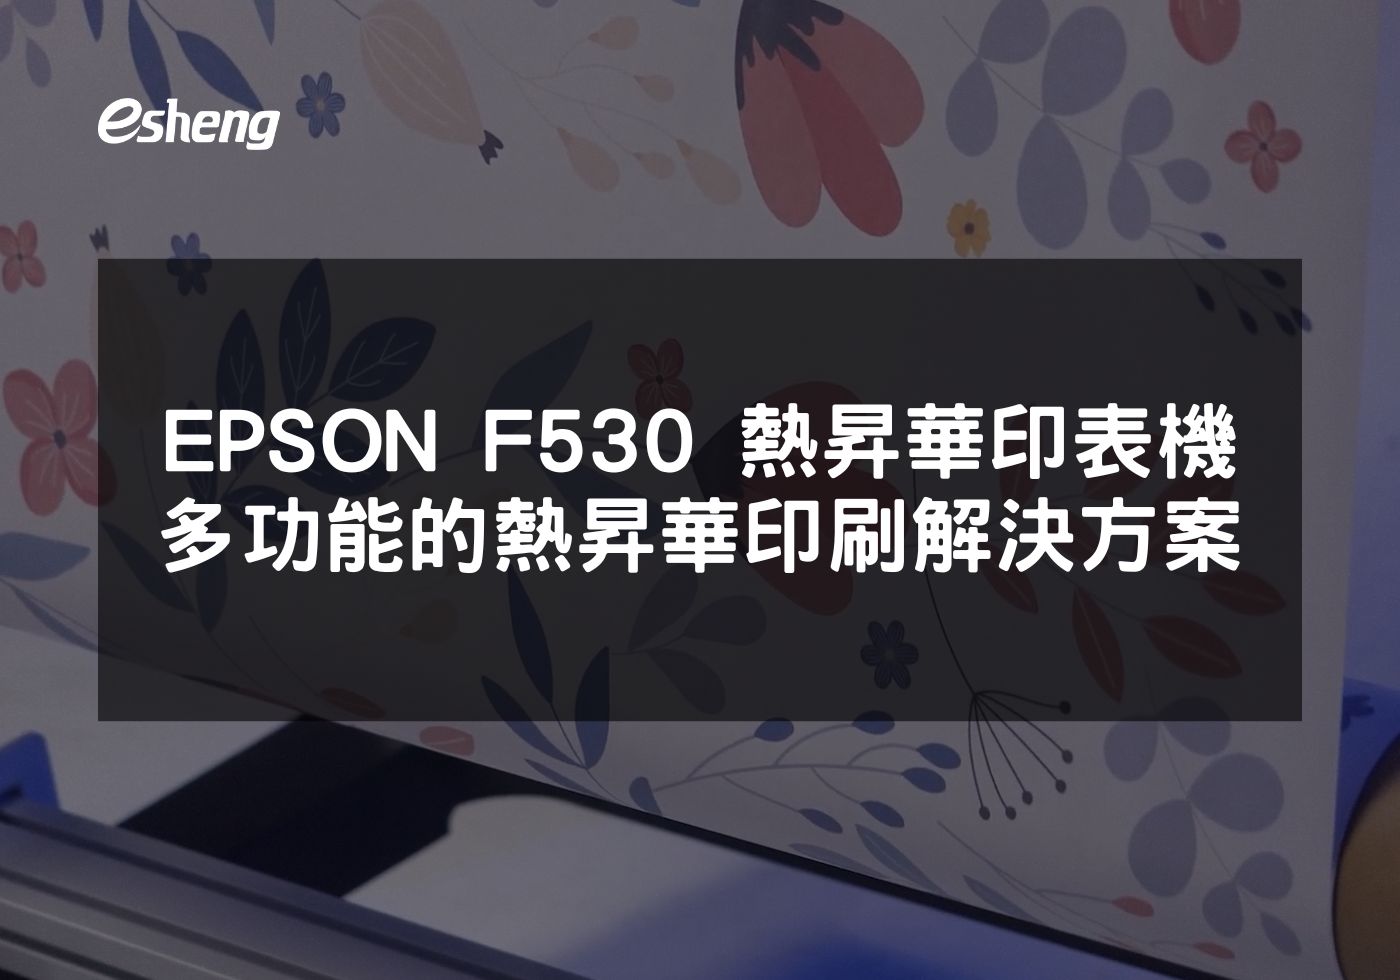 您目前正在查看 EPSON F530 熱昇華印表機 高效多功能的熱昇華印刷解決方案